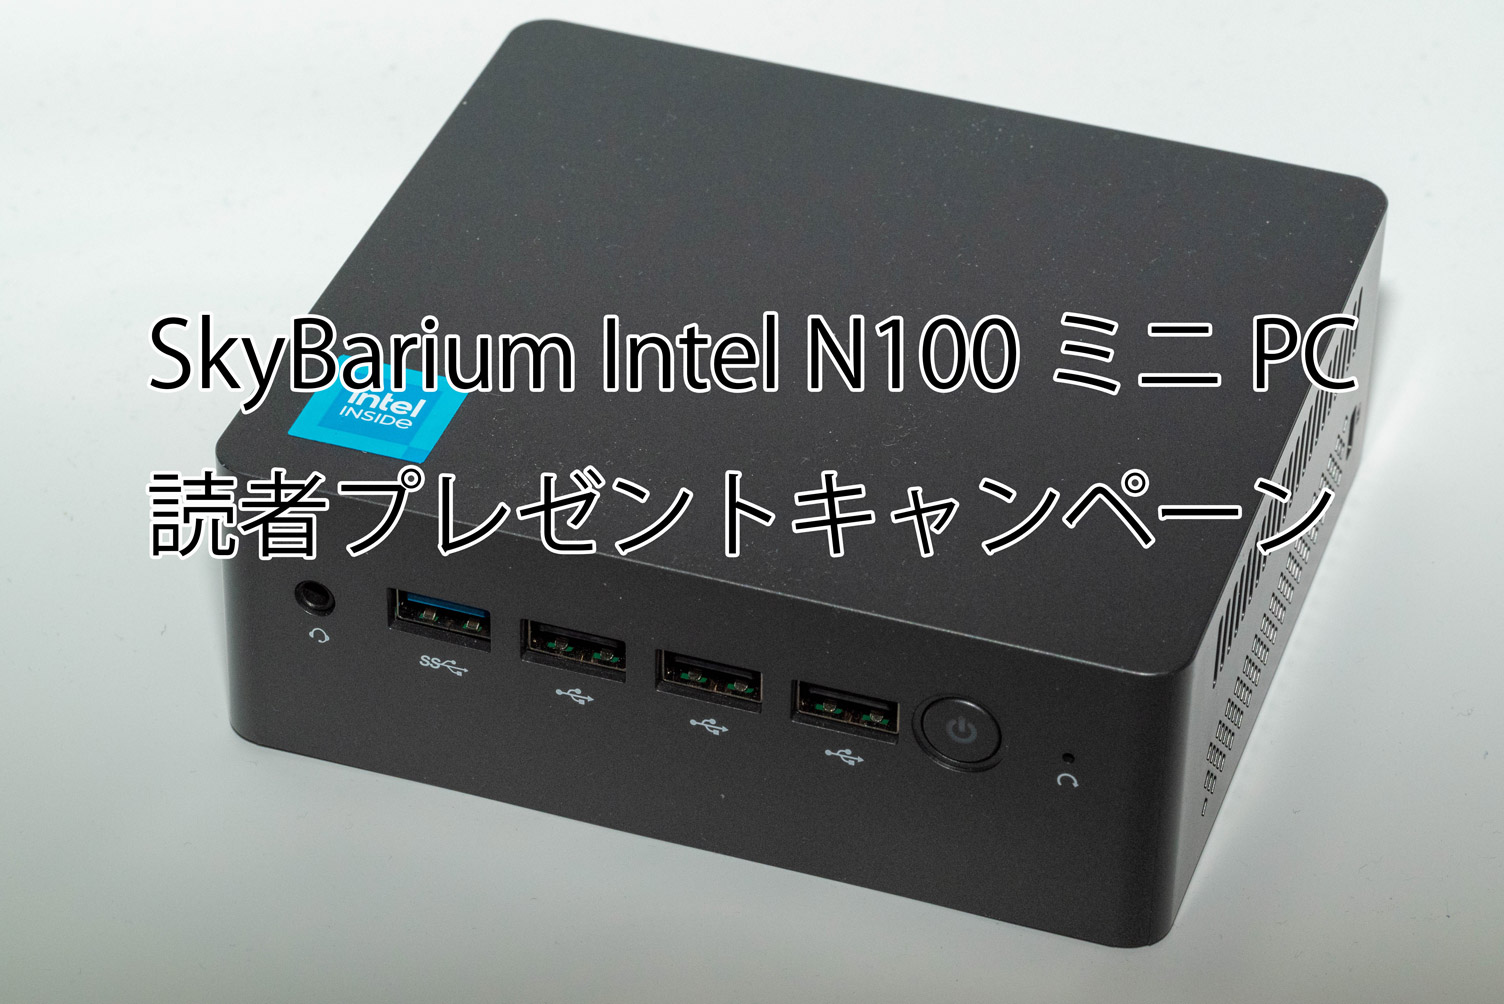 「SkyBarium Intel N100ミニPC」抽選プレゼントキャンペーン